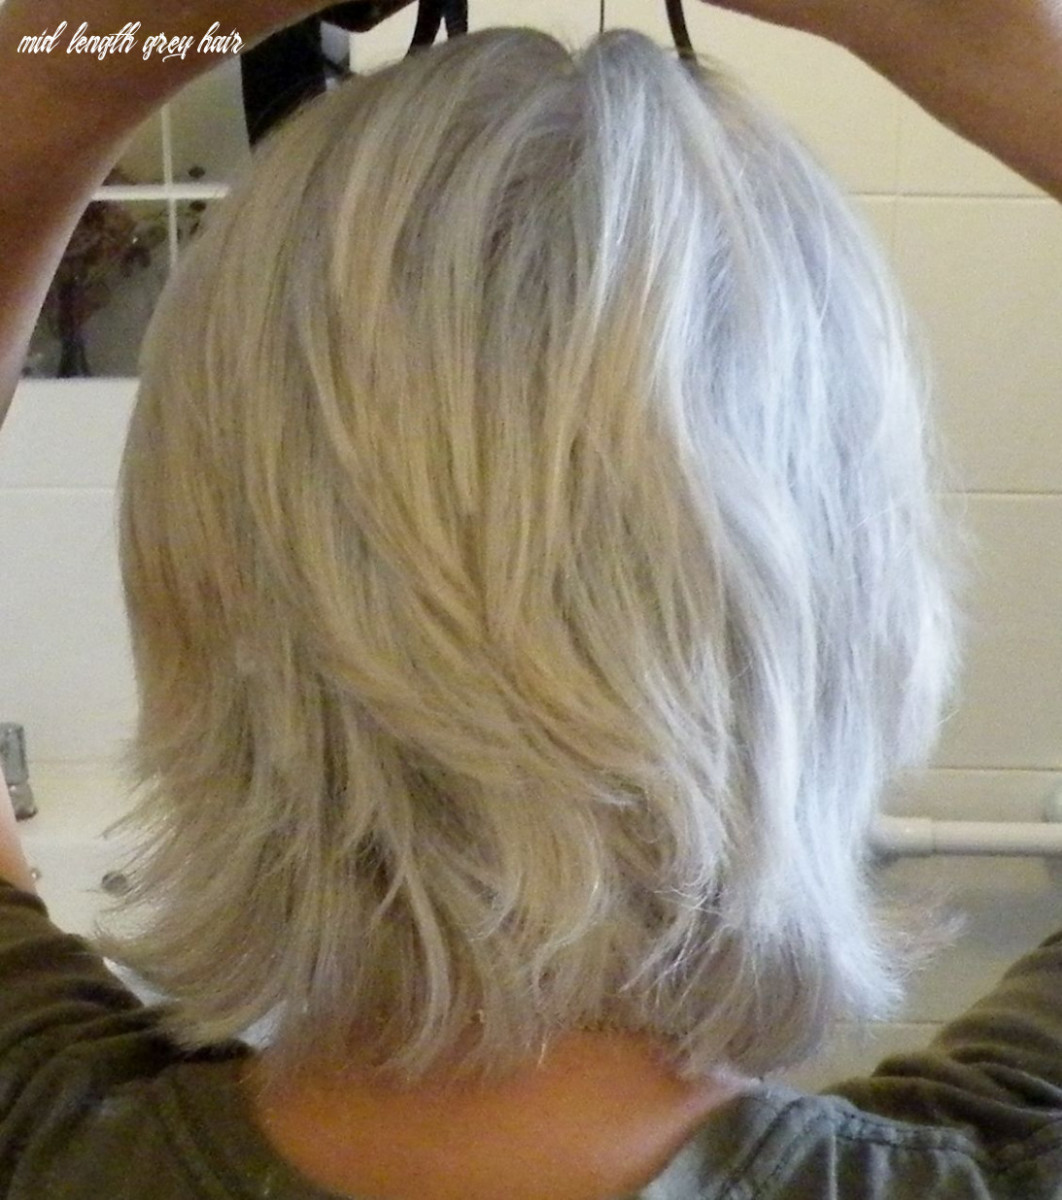 more-silver-fox-hair-styles